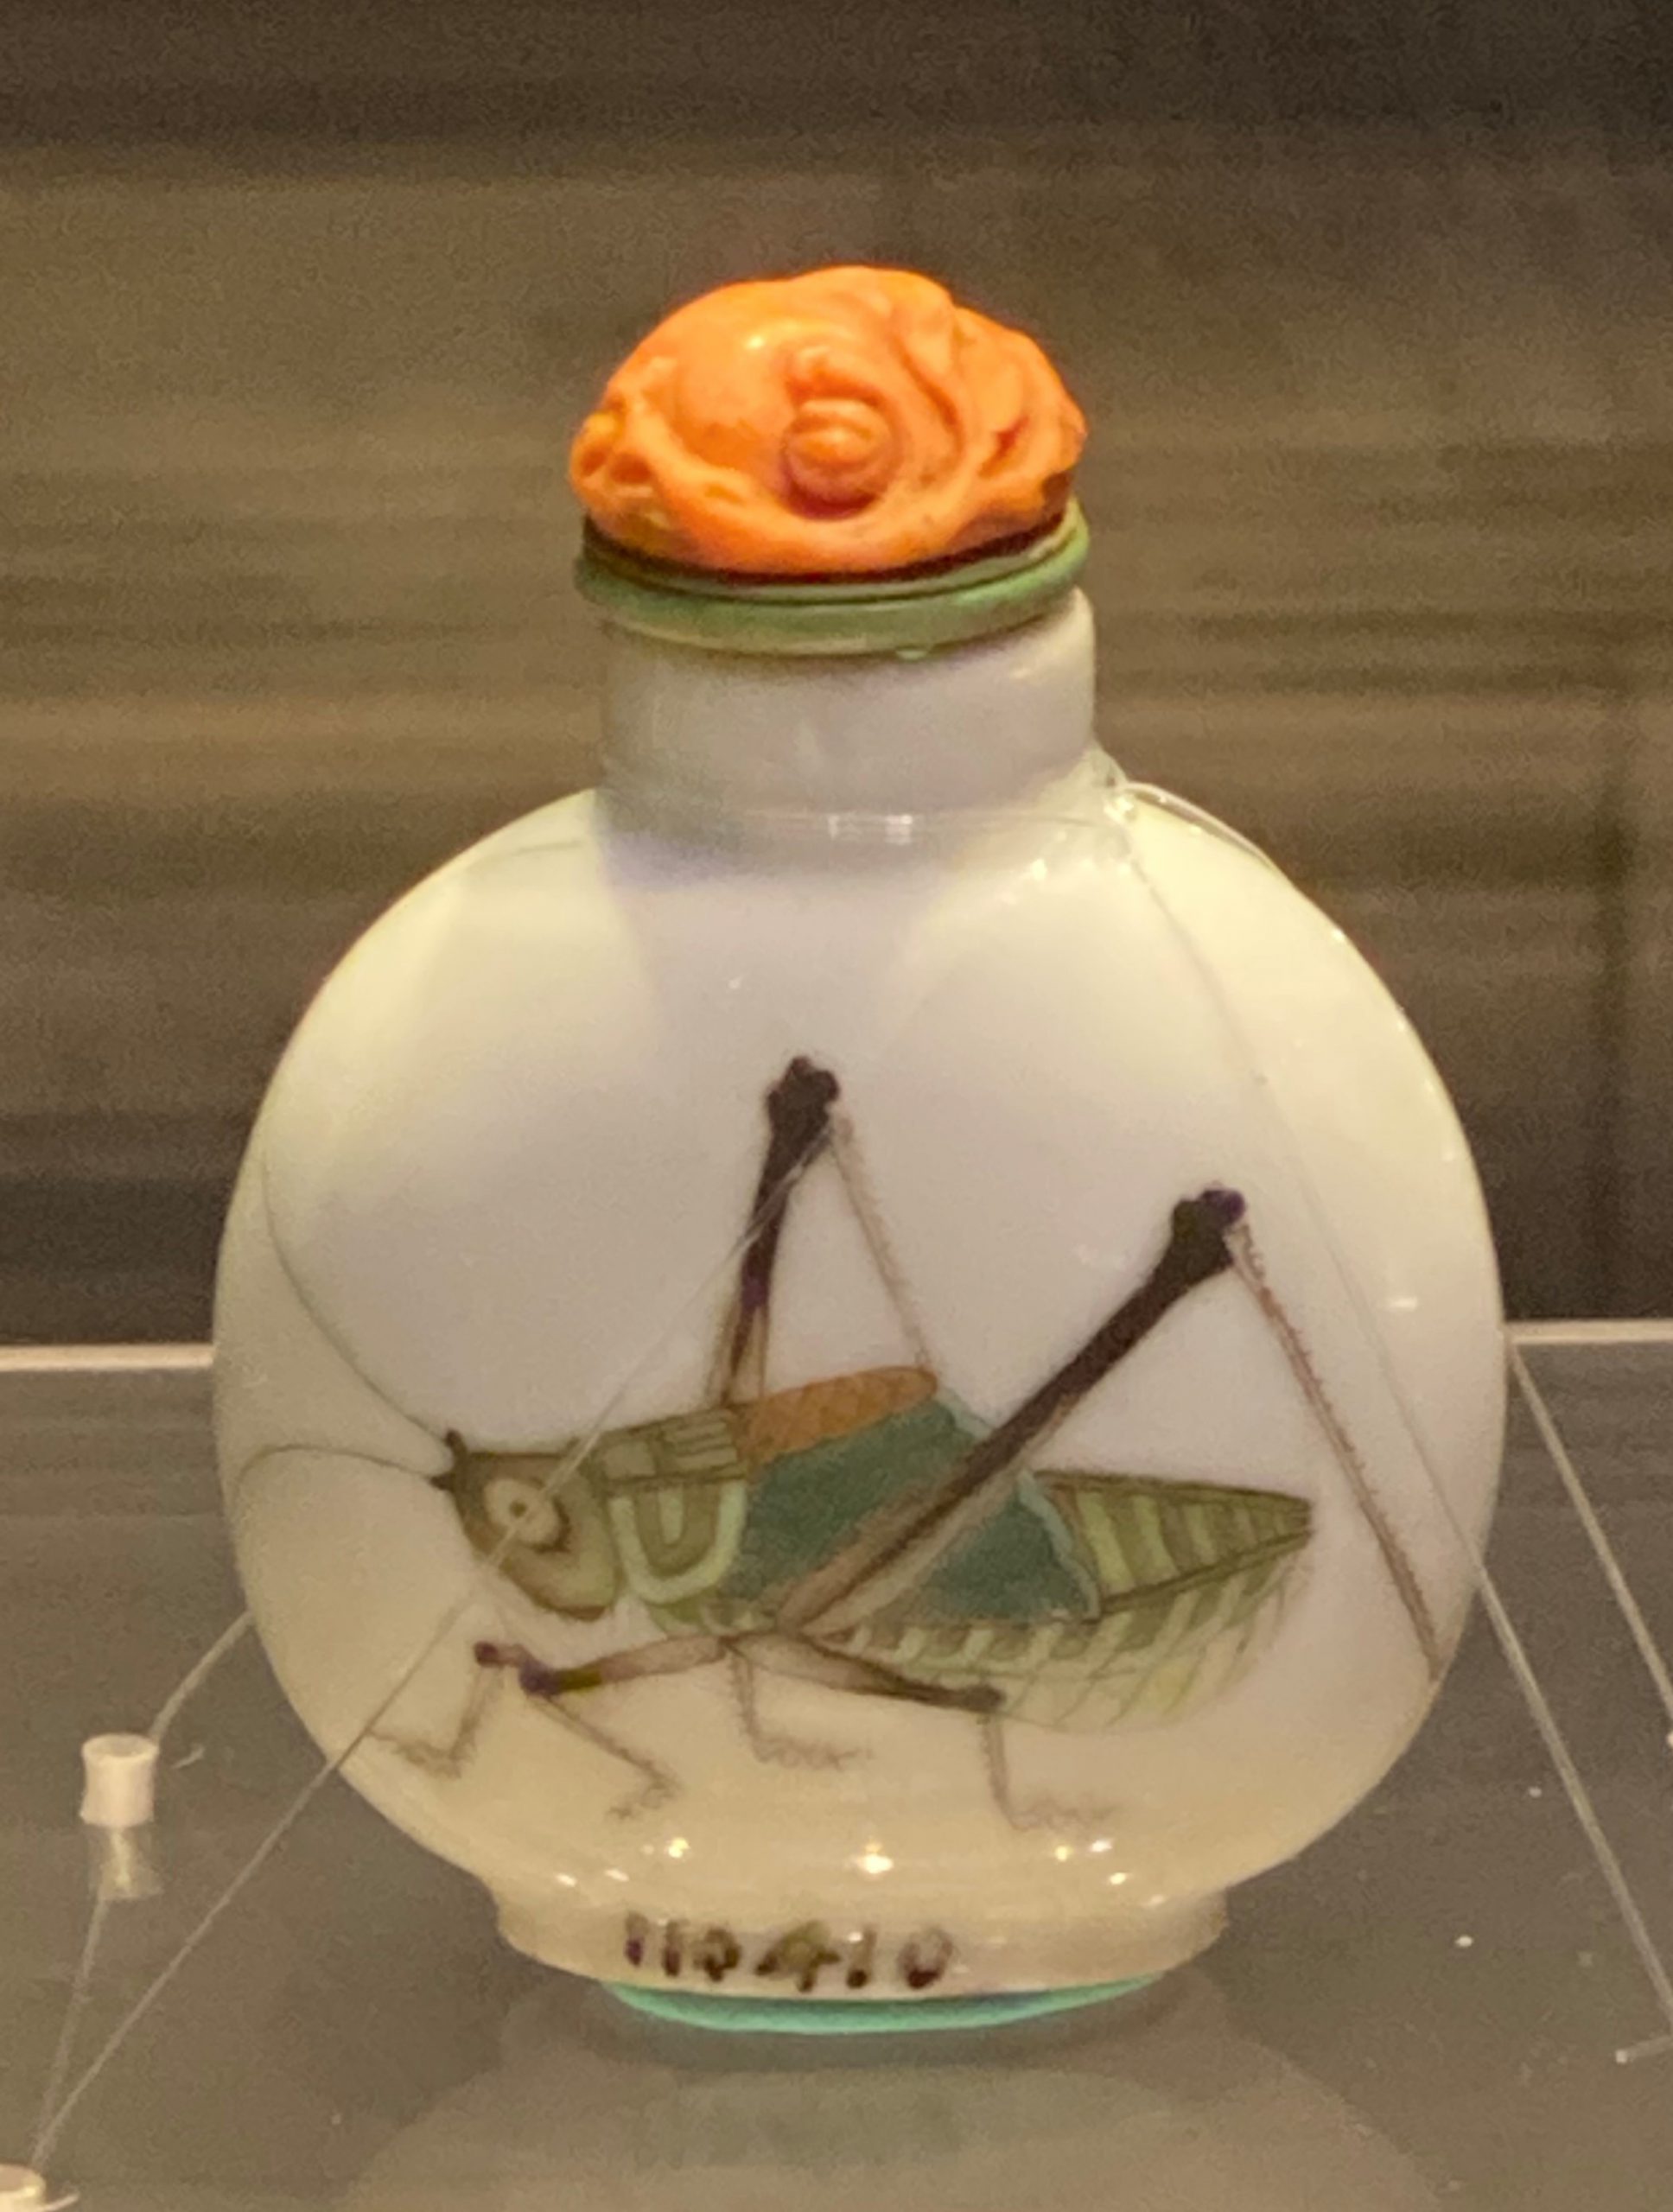 白磁絵蟋蟀鼻煙瓶-清時代-工藝美術館-四川博物館-成都